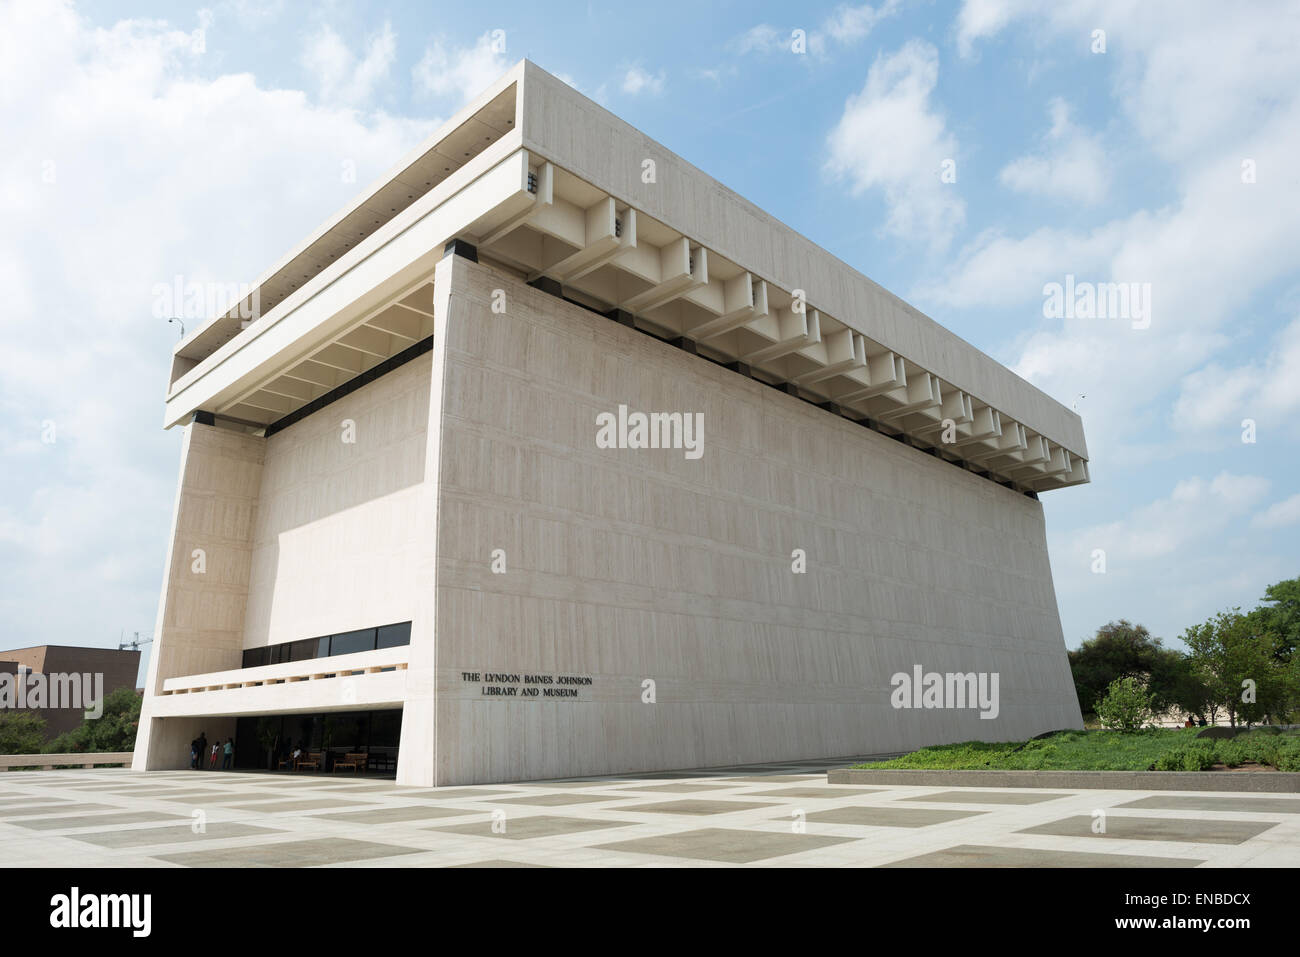 AUSTIN, Texas - la LBJ Library and Museum (LBJ Presidential Library) est l'une des 13 bibliothèques présidentielles administrées par la National Archives and Records Administration. Il abrite des documents historiques de la présidence et de la vie politique de Lyndon Johnson ainsi qu'un musée. Banque D'Images